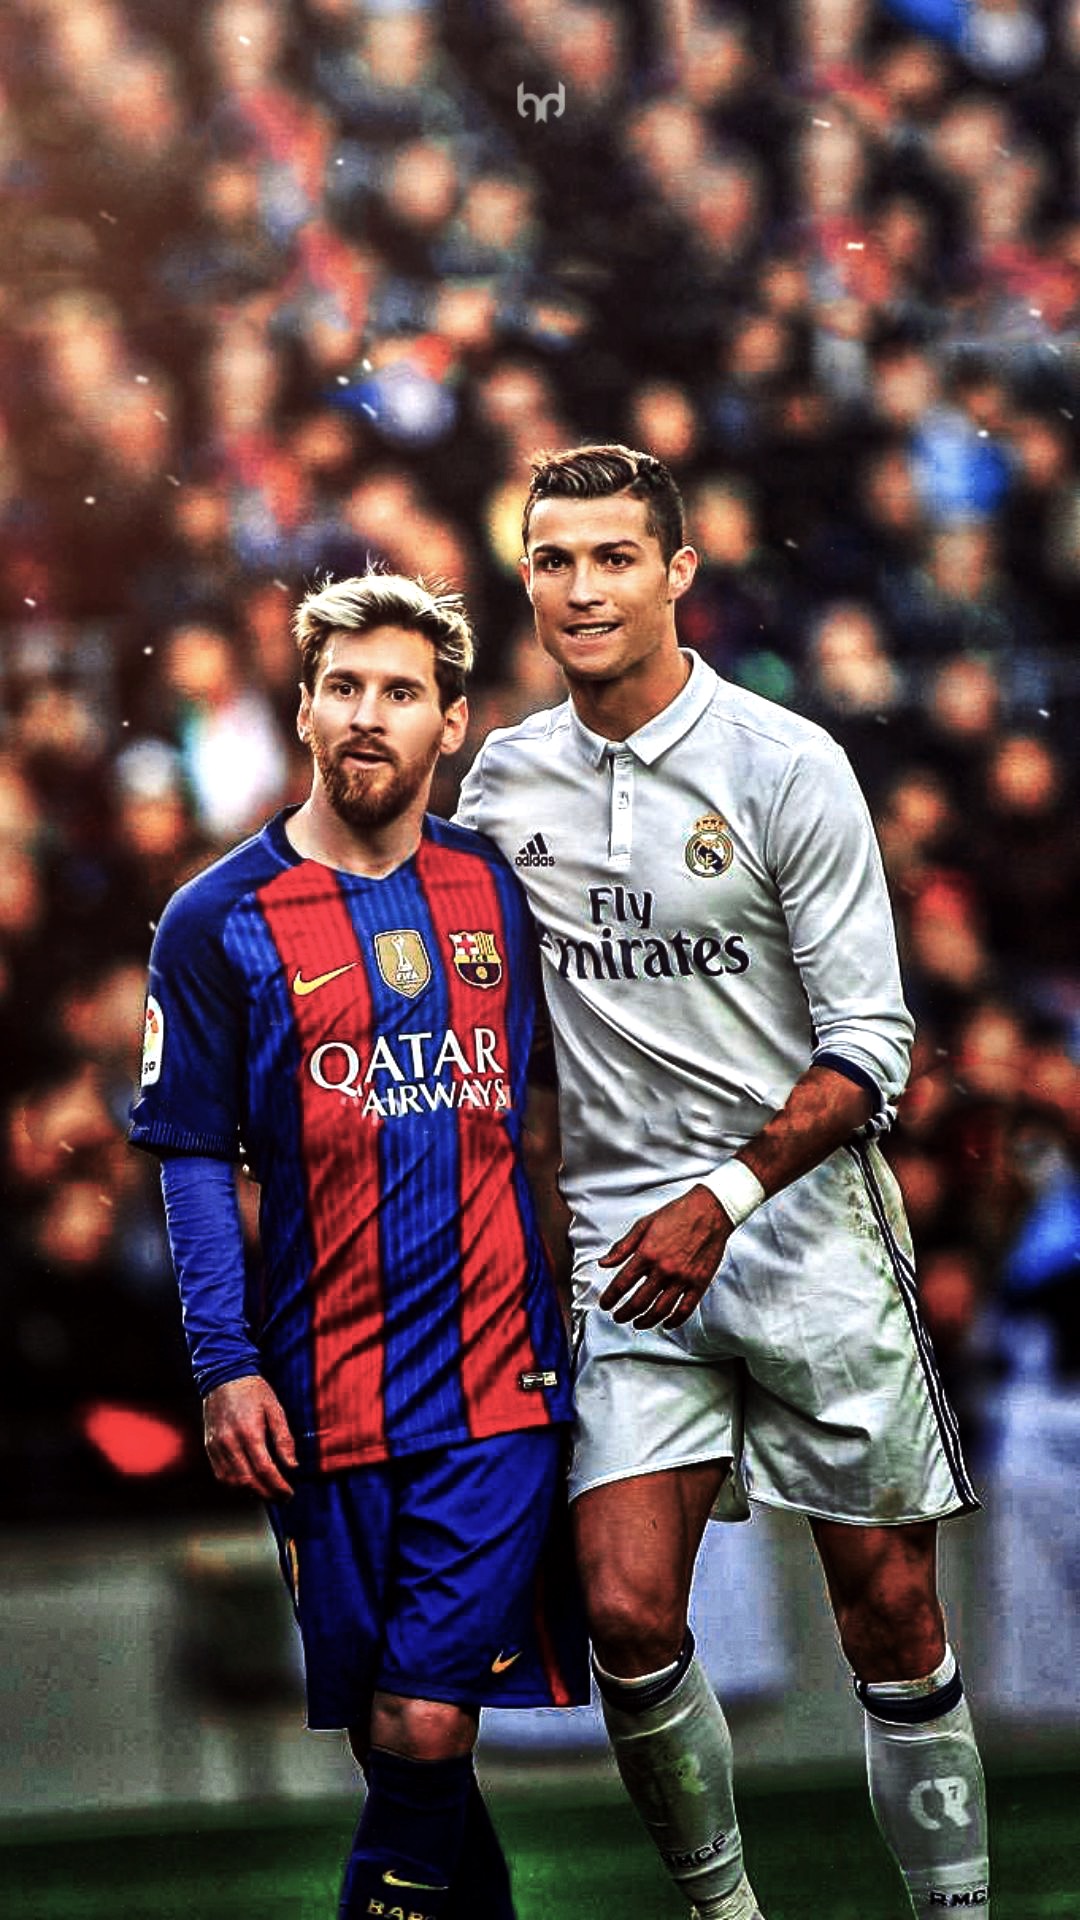 Dành cho những fan hâm mộ Messi và Ronaldo, hãy tải ngay hình nền sáng tạo về cặp đôi đình đám này để thể hiện niềm yêu mến của mình. Và khi nhìn lại bức ảnh, bạn sẽ cảm nhận được sự kỳ diệu của sự hoà hợp và sự đối lập trong bóng đá.